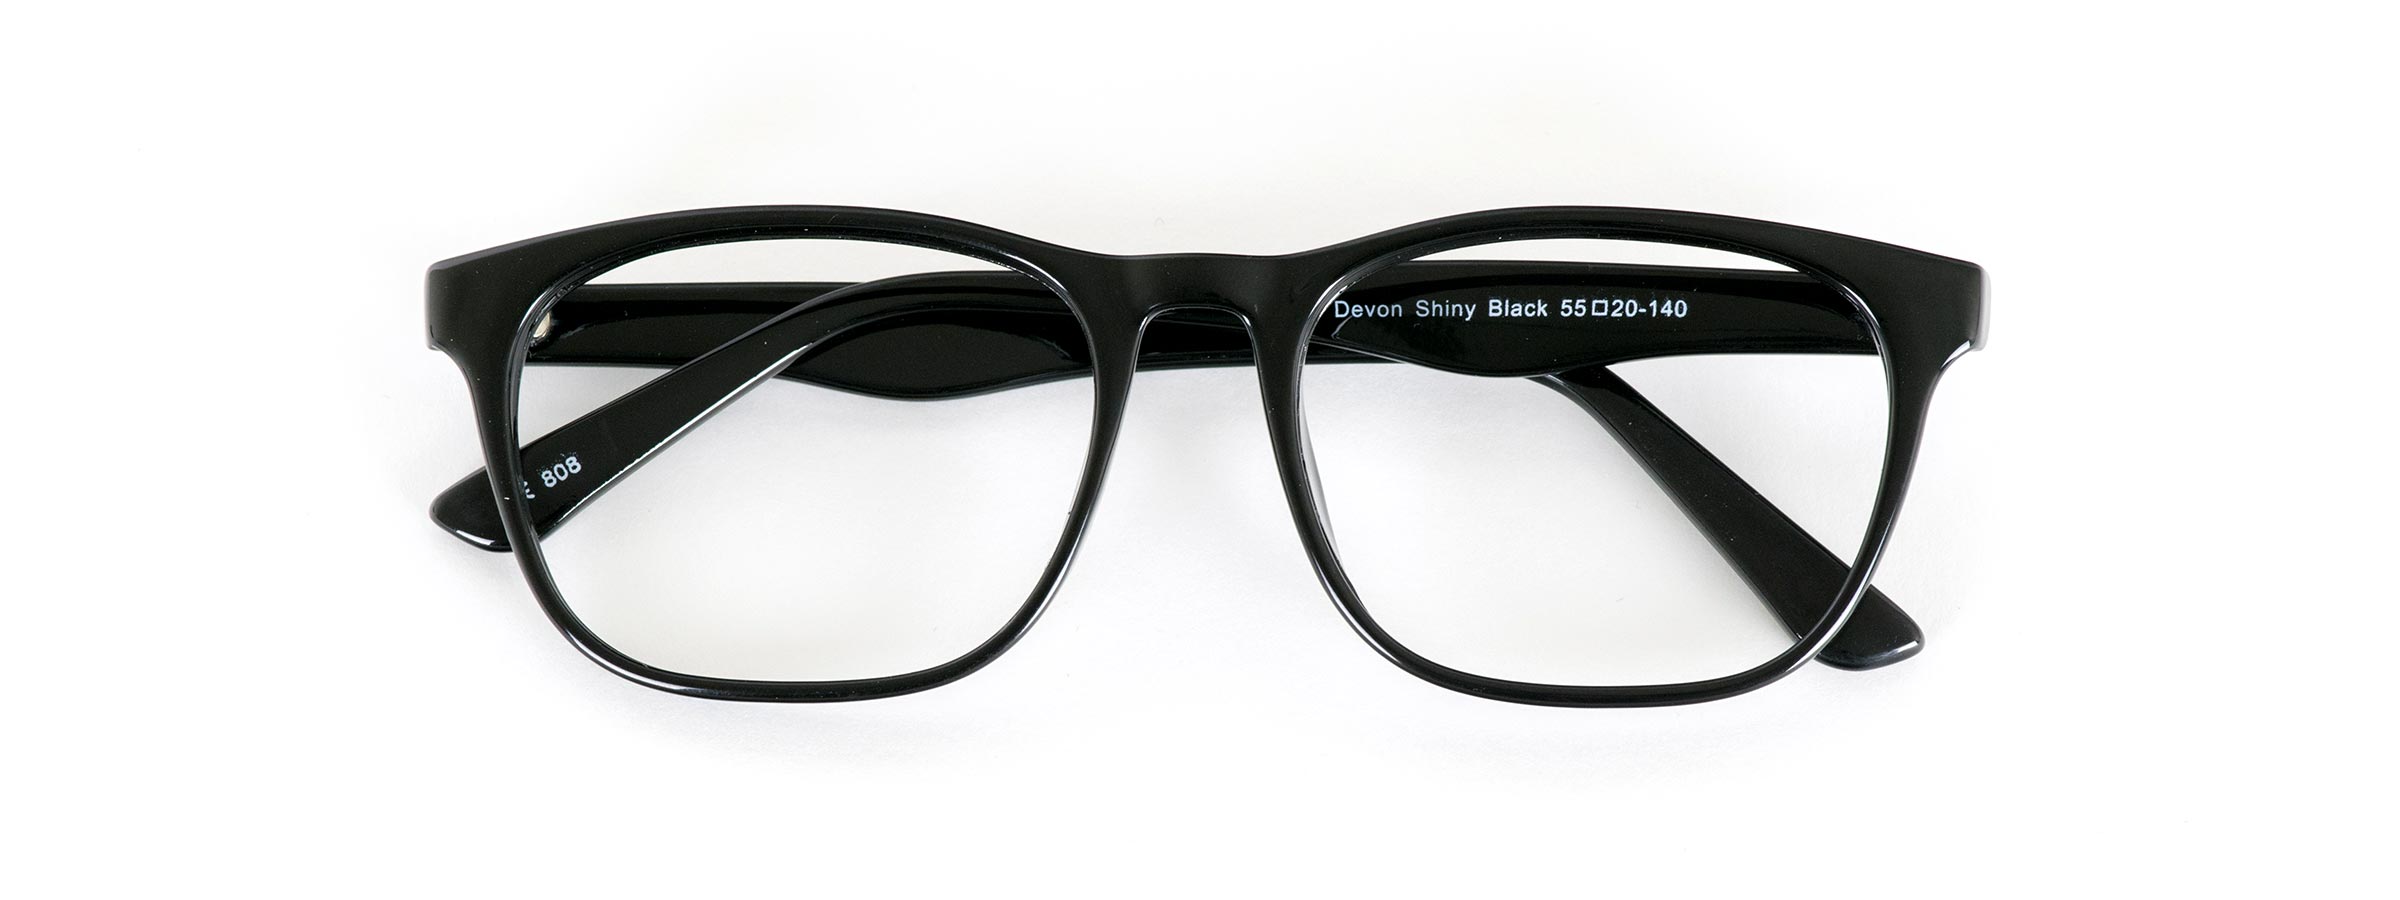 Glasses Direct Devon in shiny black